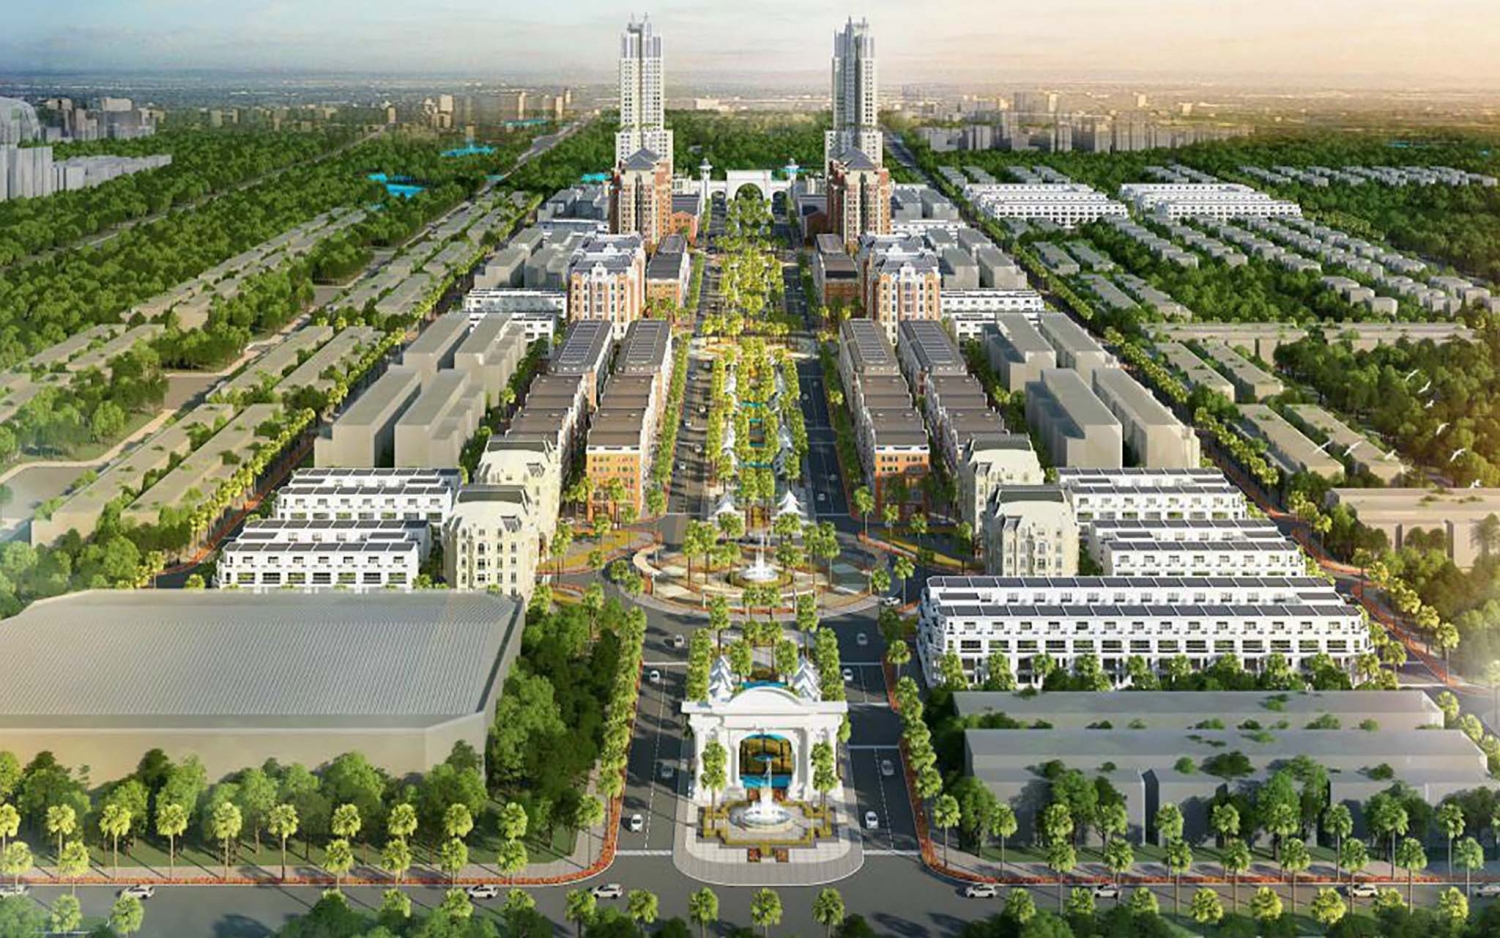 Tin bất động sản ngày 15/4: Bắc Giang duyệt quy hoạch 2 khu đô thị mới